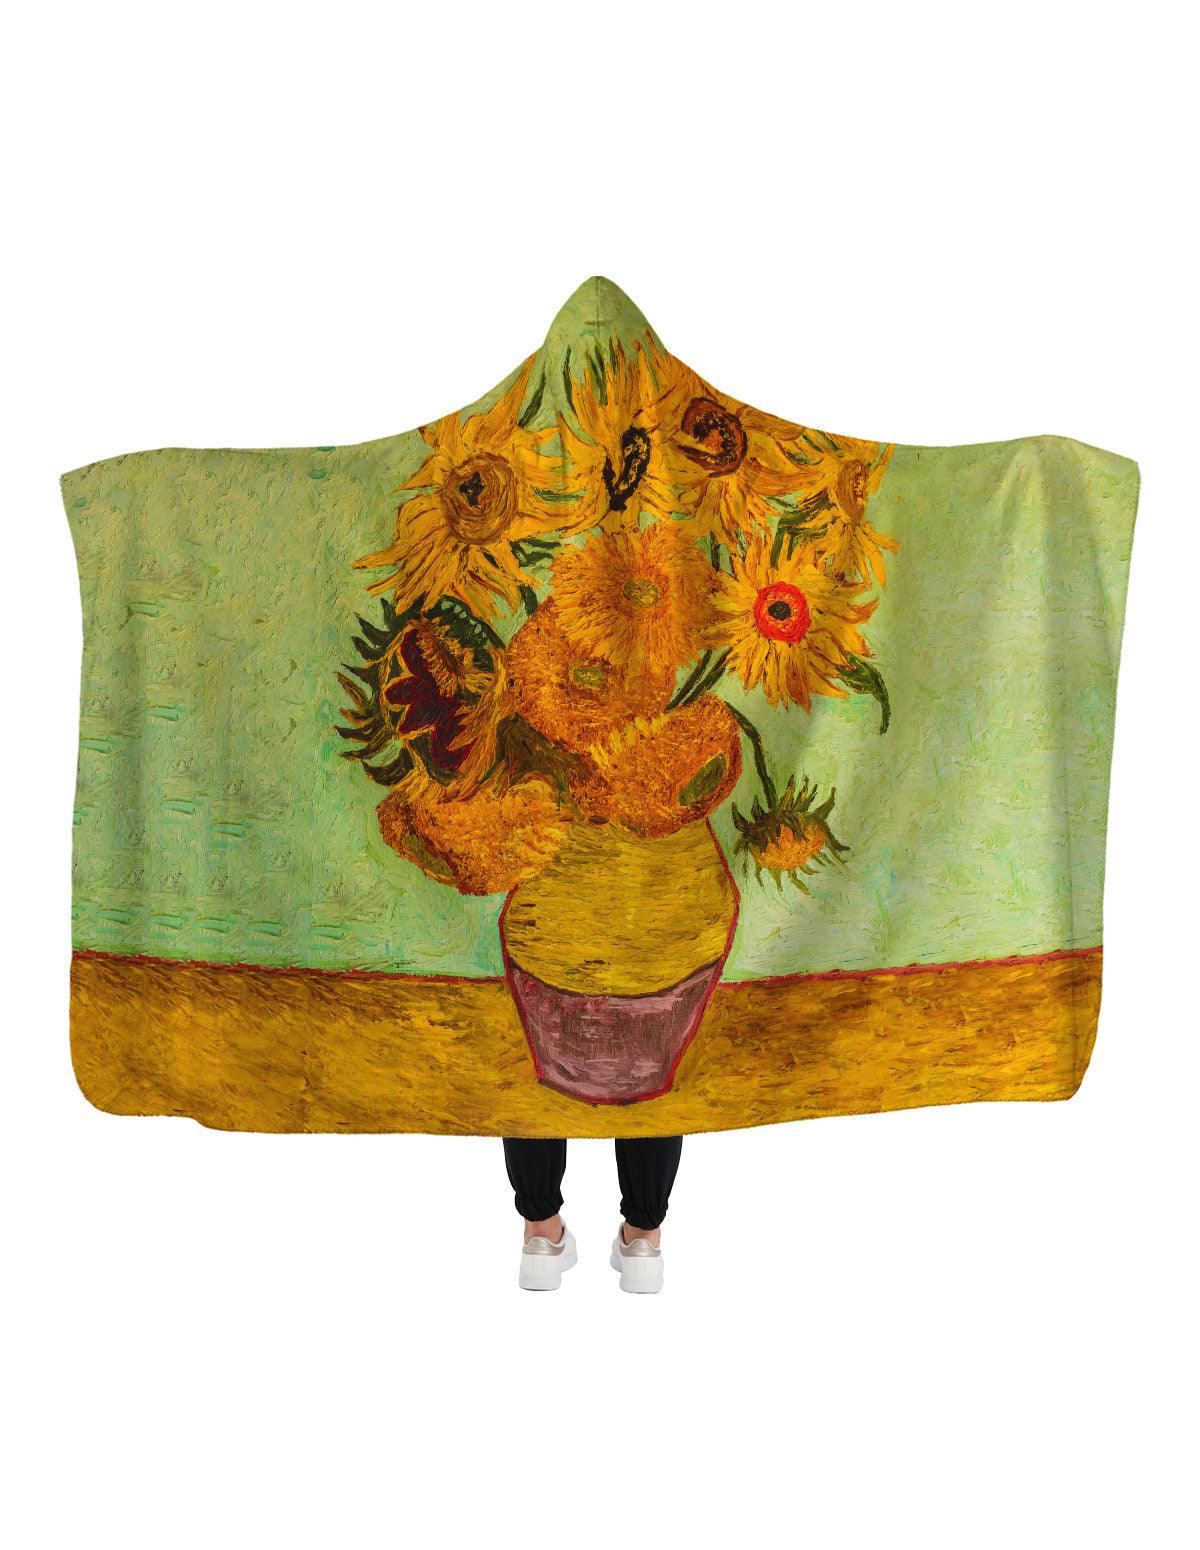 Van Gogh Sunflowers Hoodie Blanket - artucky-US - battaniye, eser, giyim, import_2022_07_19_113509, kapşonlu, kapşonlu battaniye, sunflowers, van gogh, van gogh sunflowers, vincent